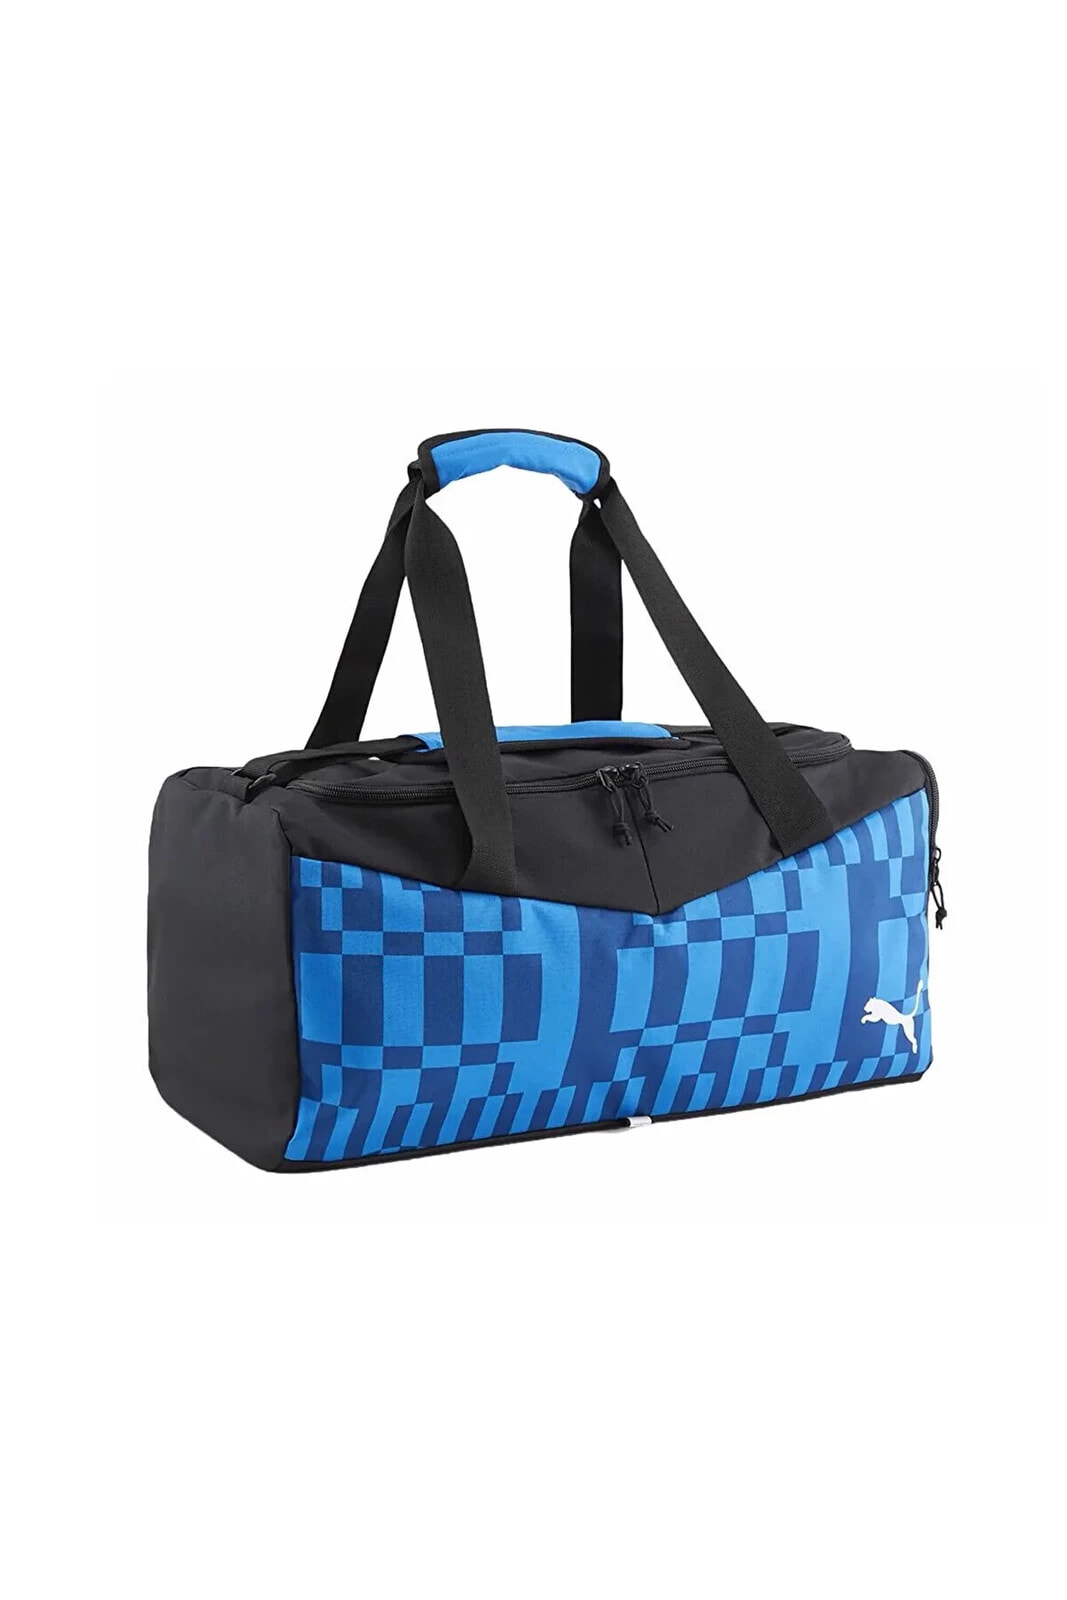 Individualrise Small Bag Spor Çantası 7991202 Mavi